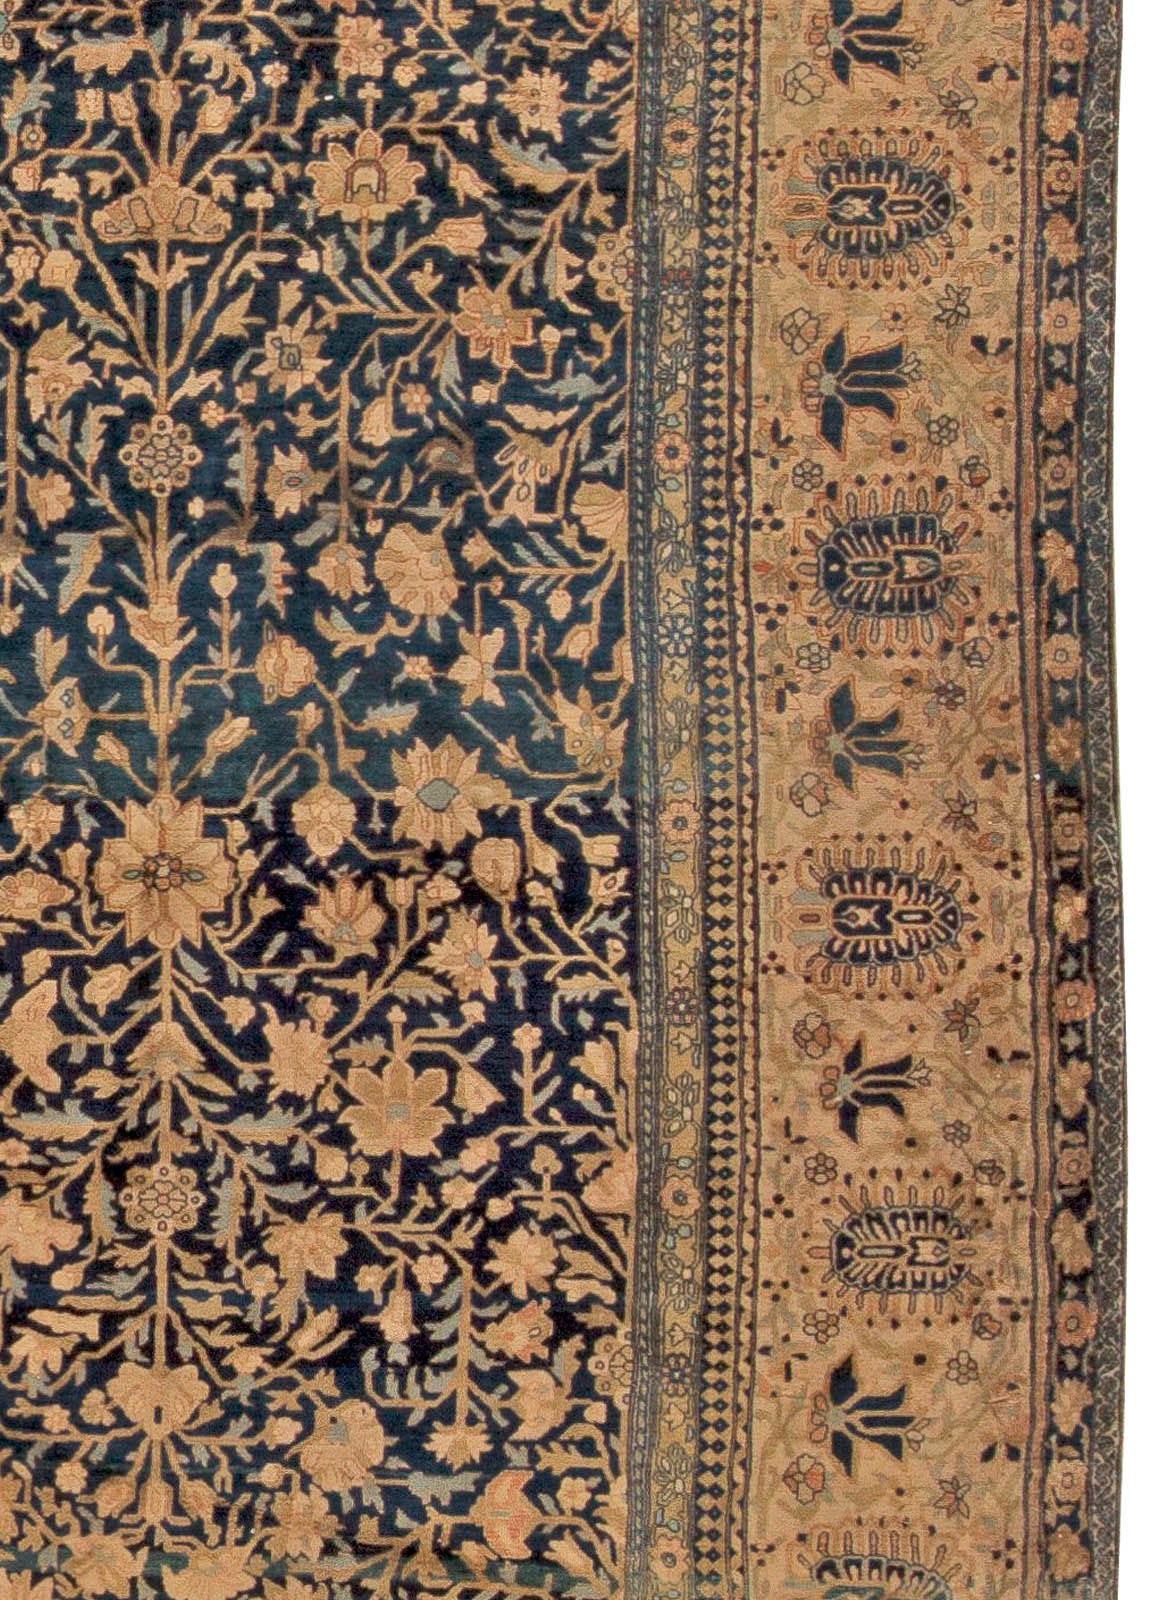 19th Century Vintage Persian Kashan Botanic Navy Brown Handmade Wool Rug by Doris Leslie Blau For Sale